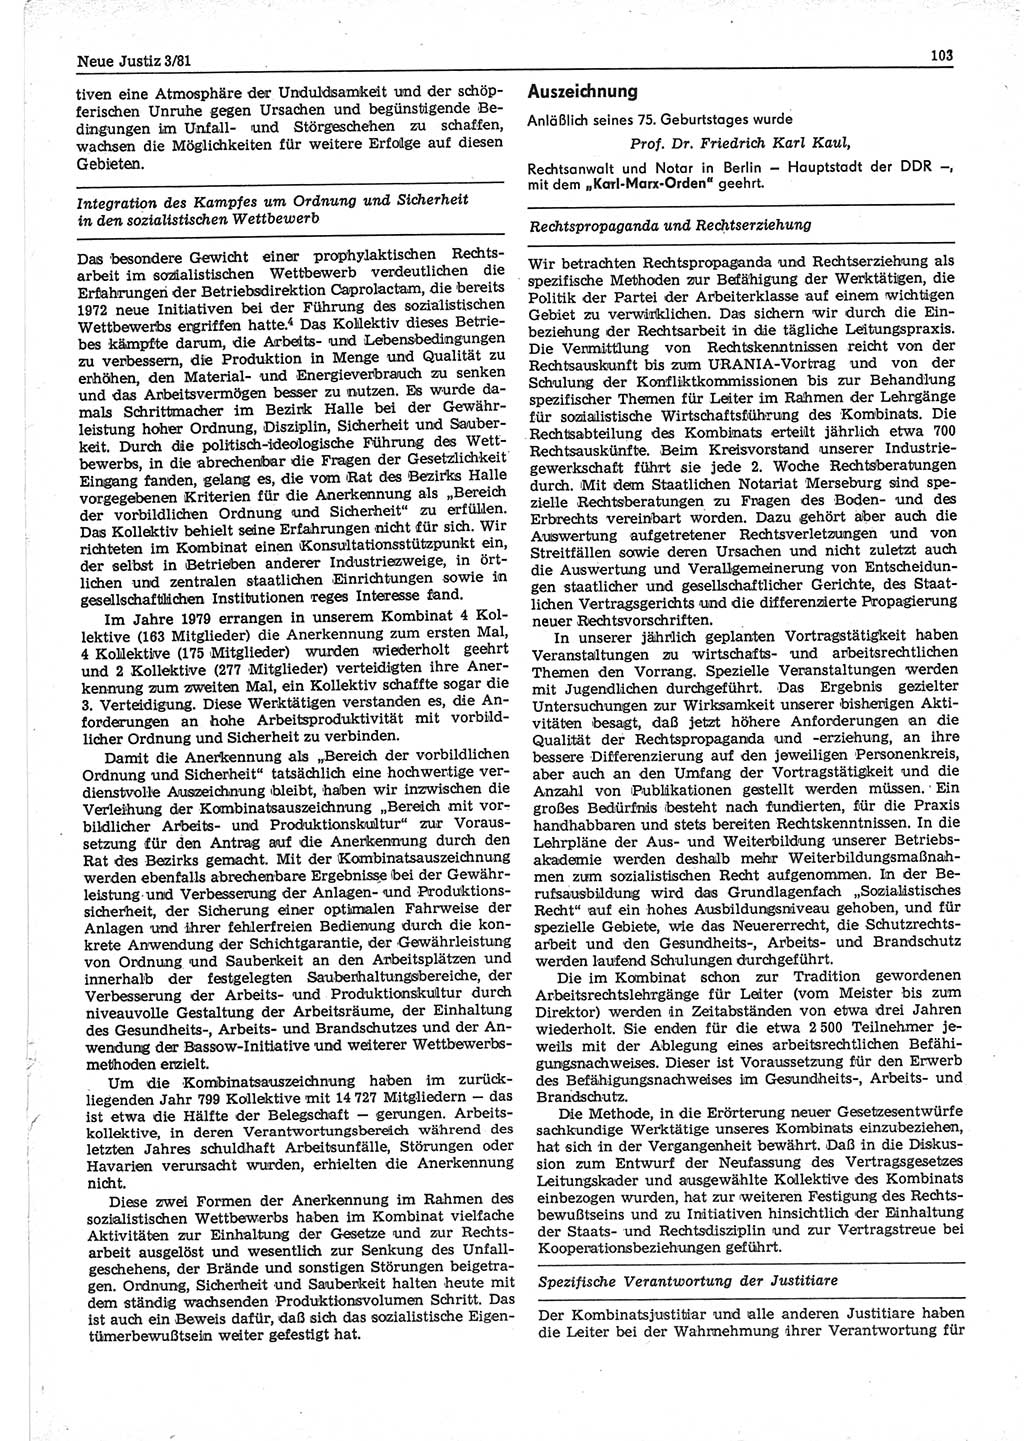 Neue Justiz (NJ), Zeitschrift für sozialistisches Recht und Gesetzlichkeit [Deutsche Demokratische Republik (DDR)], 35. Jahrgang 1981, Seite 103 (NJ DDR 1981, S. 103)